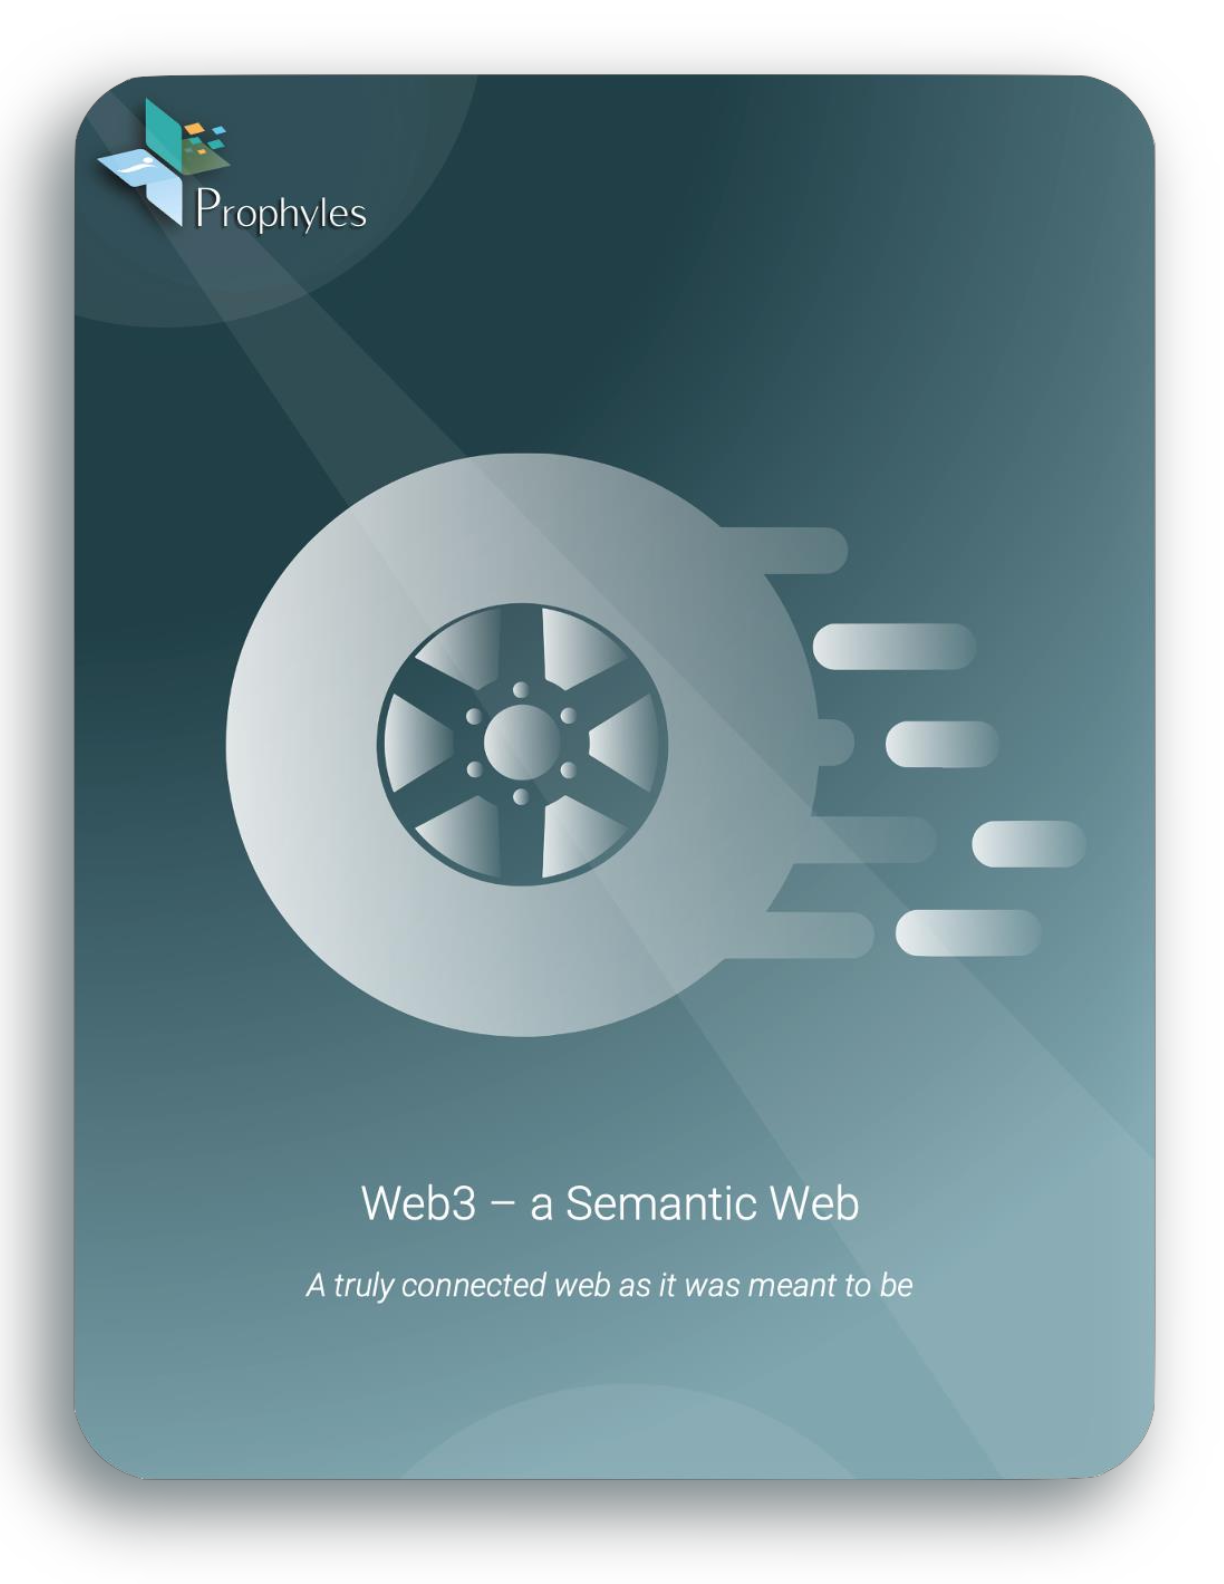 Web3 – a Semantic Web